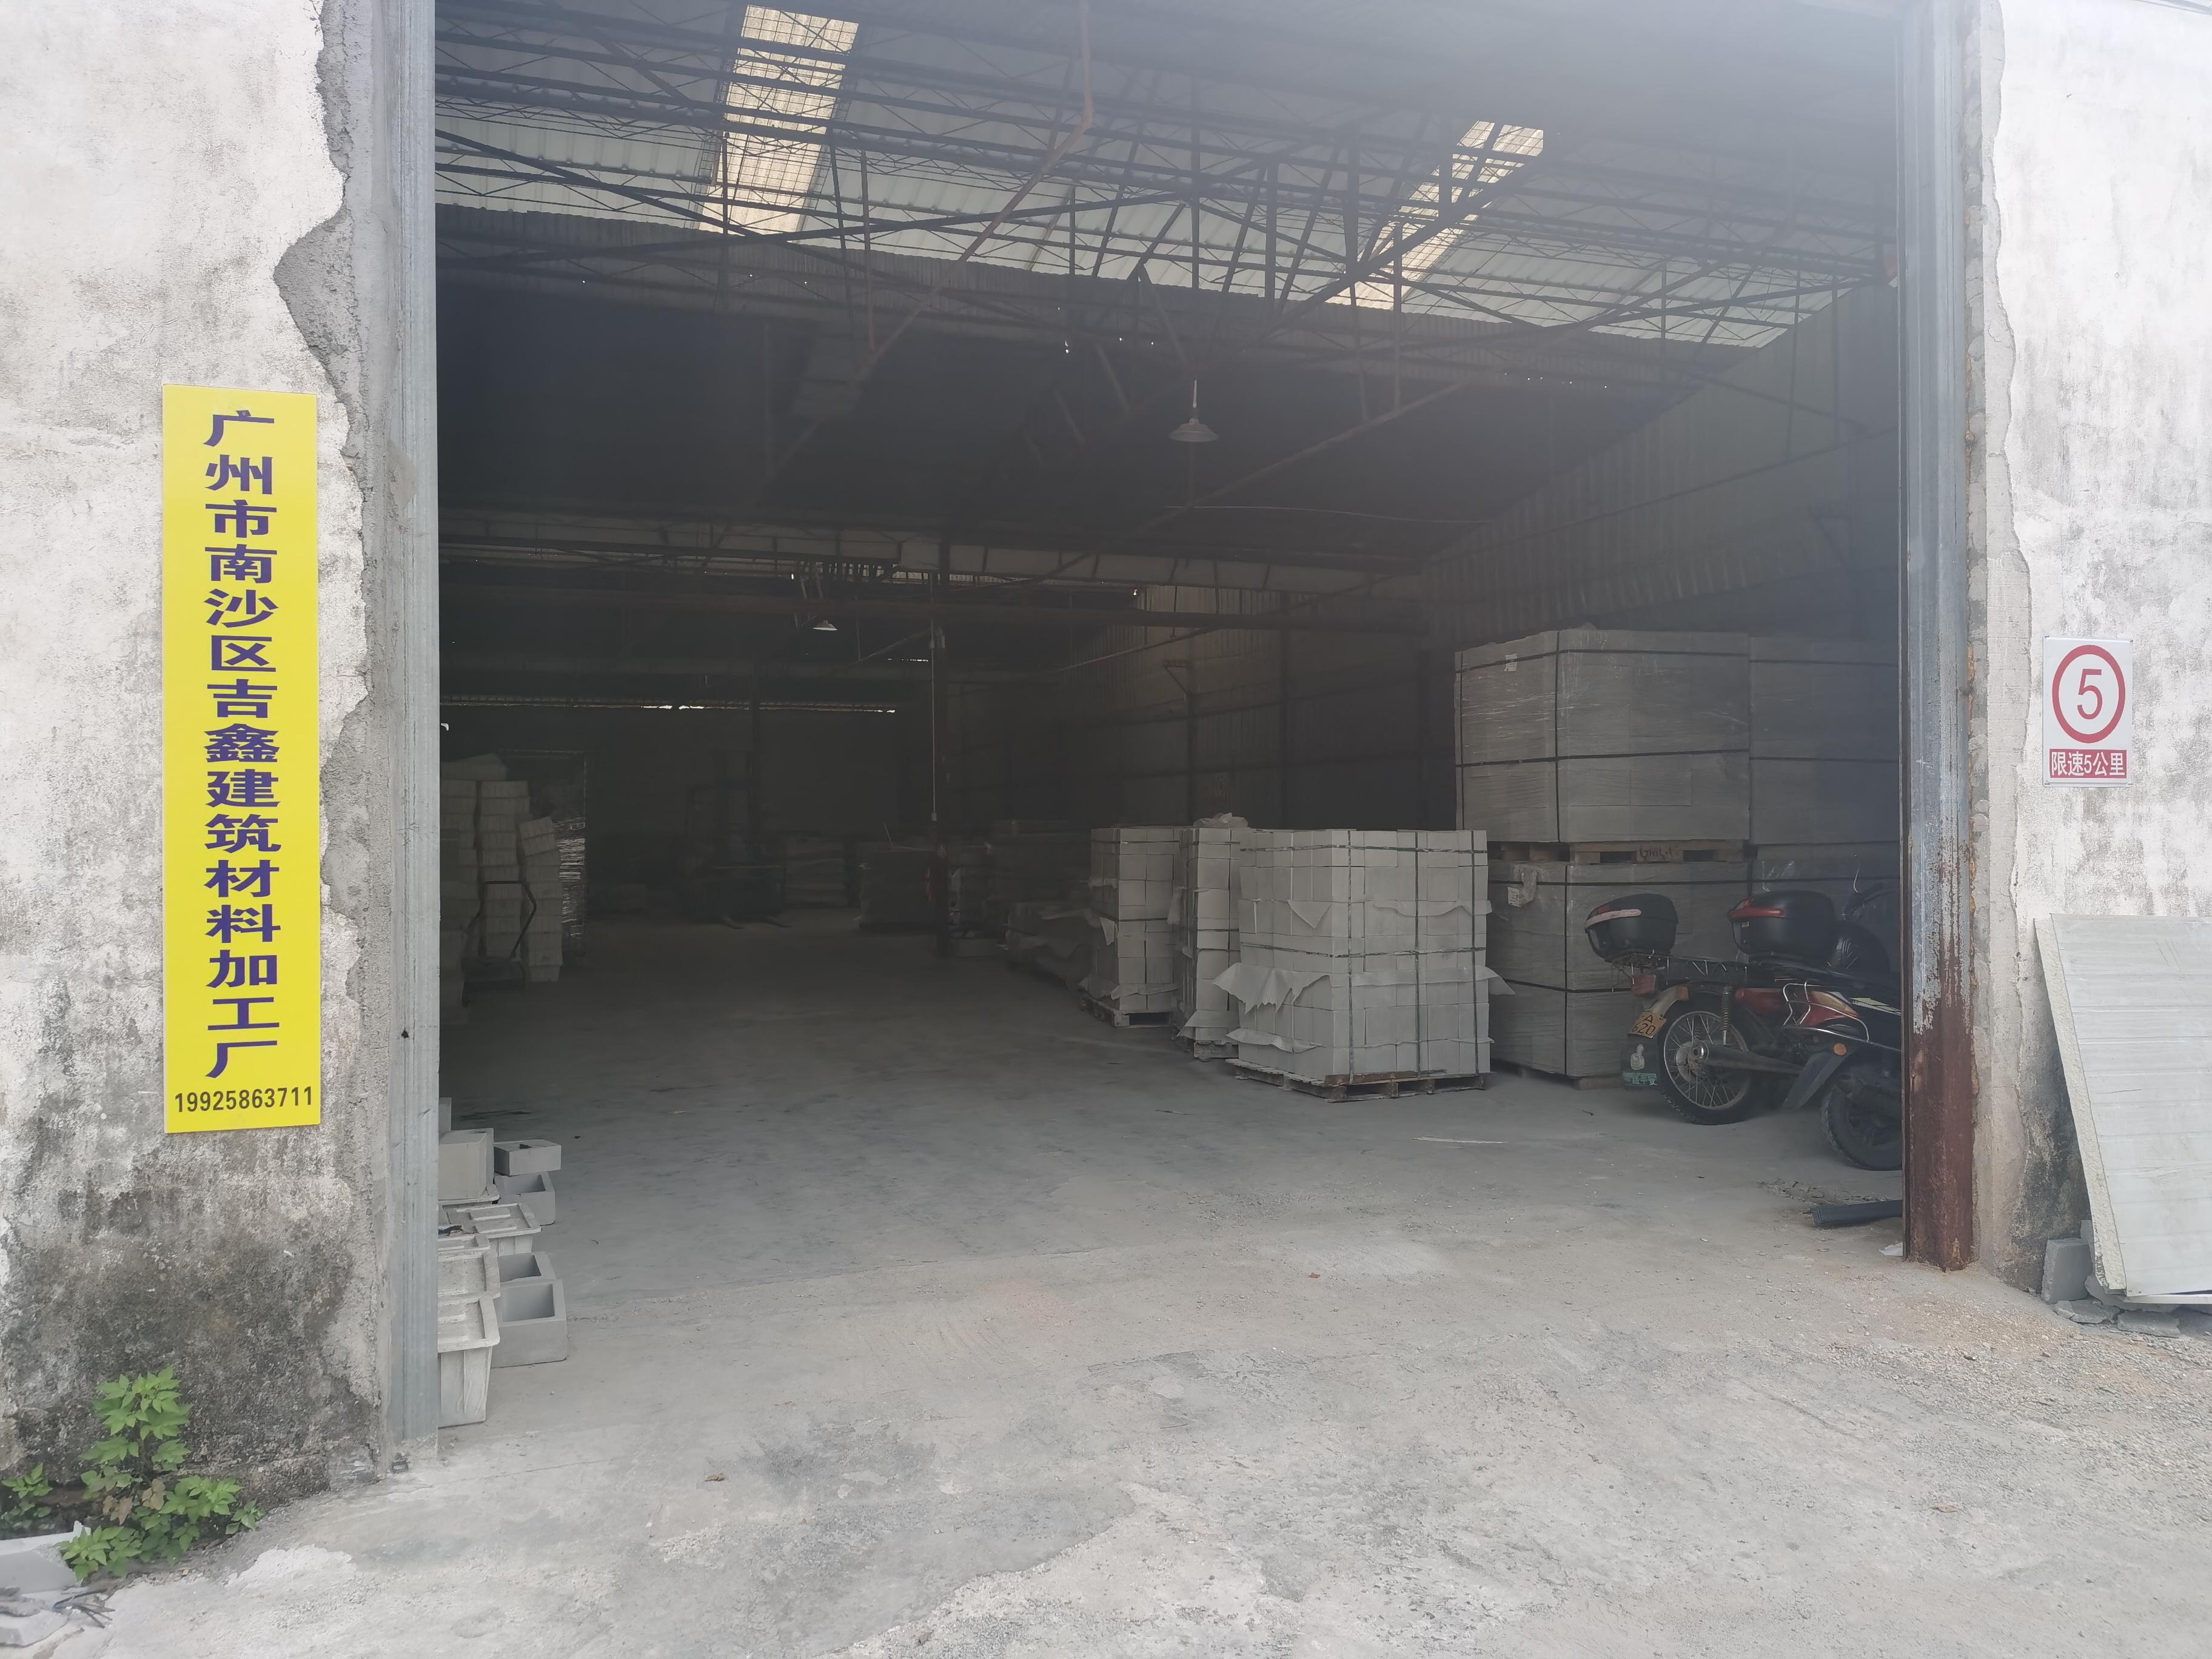       Guangzhou Nansha District Jixin Building Materials Processing Factory